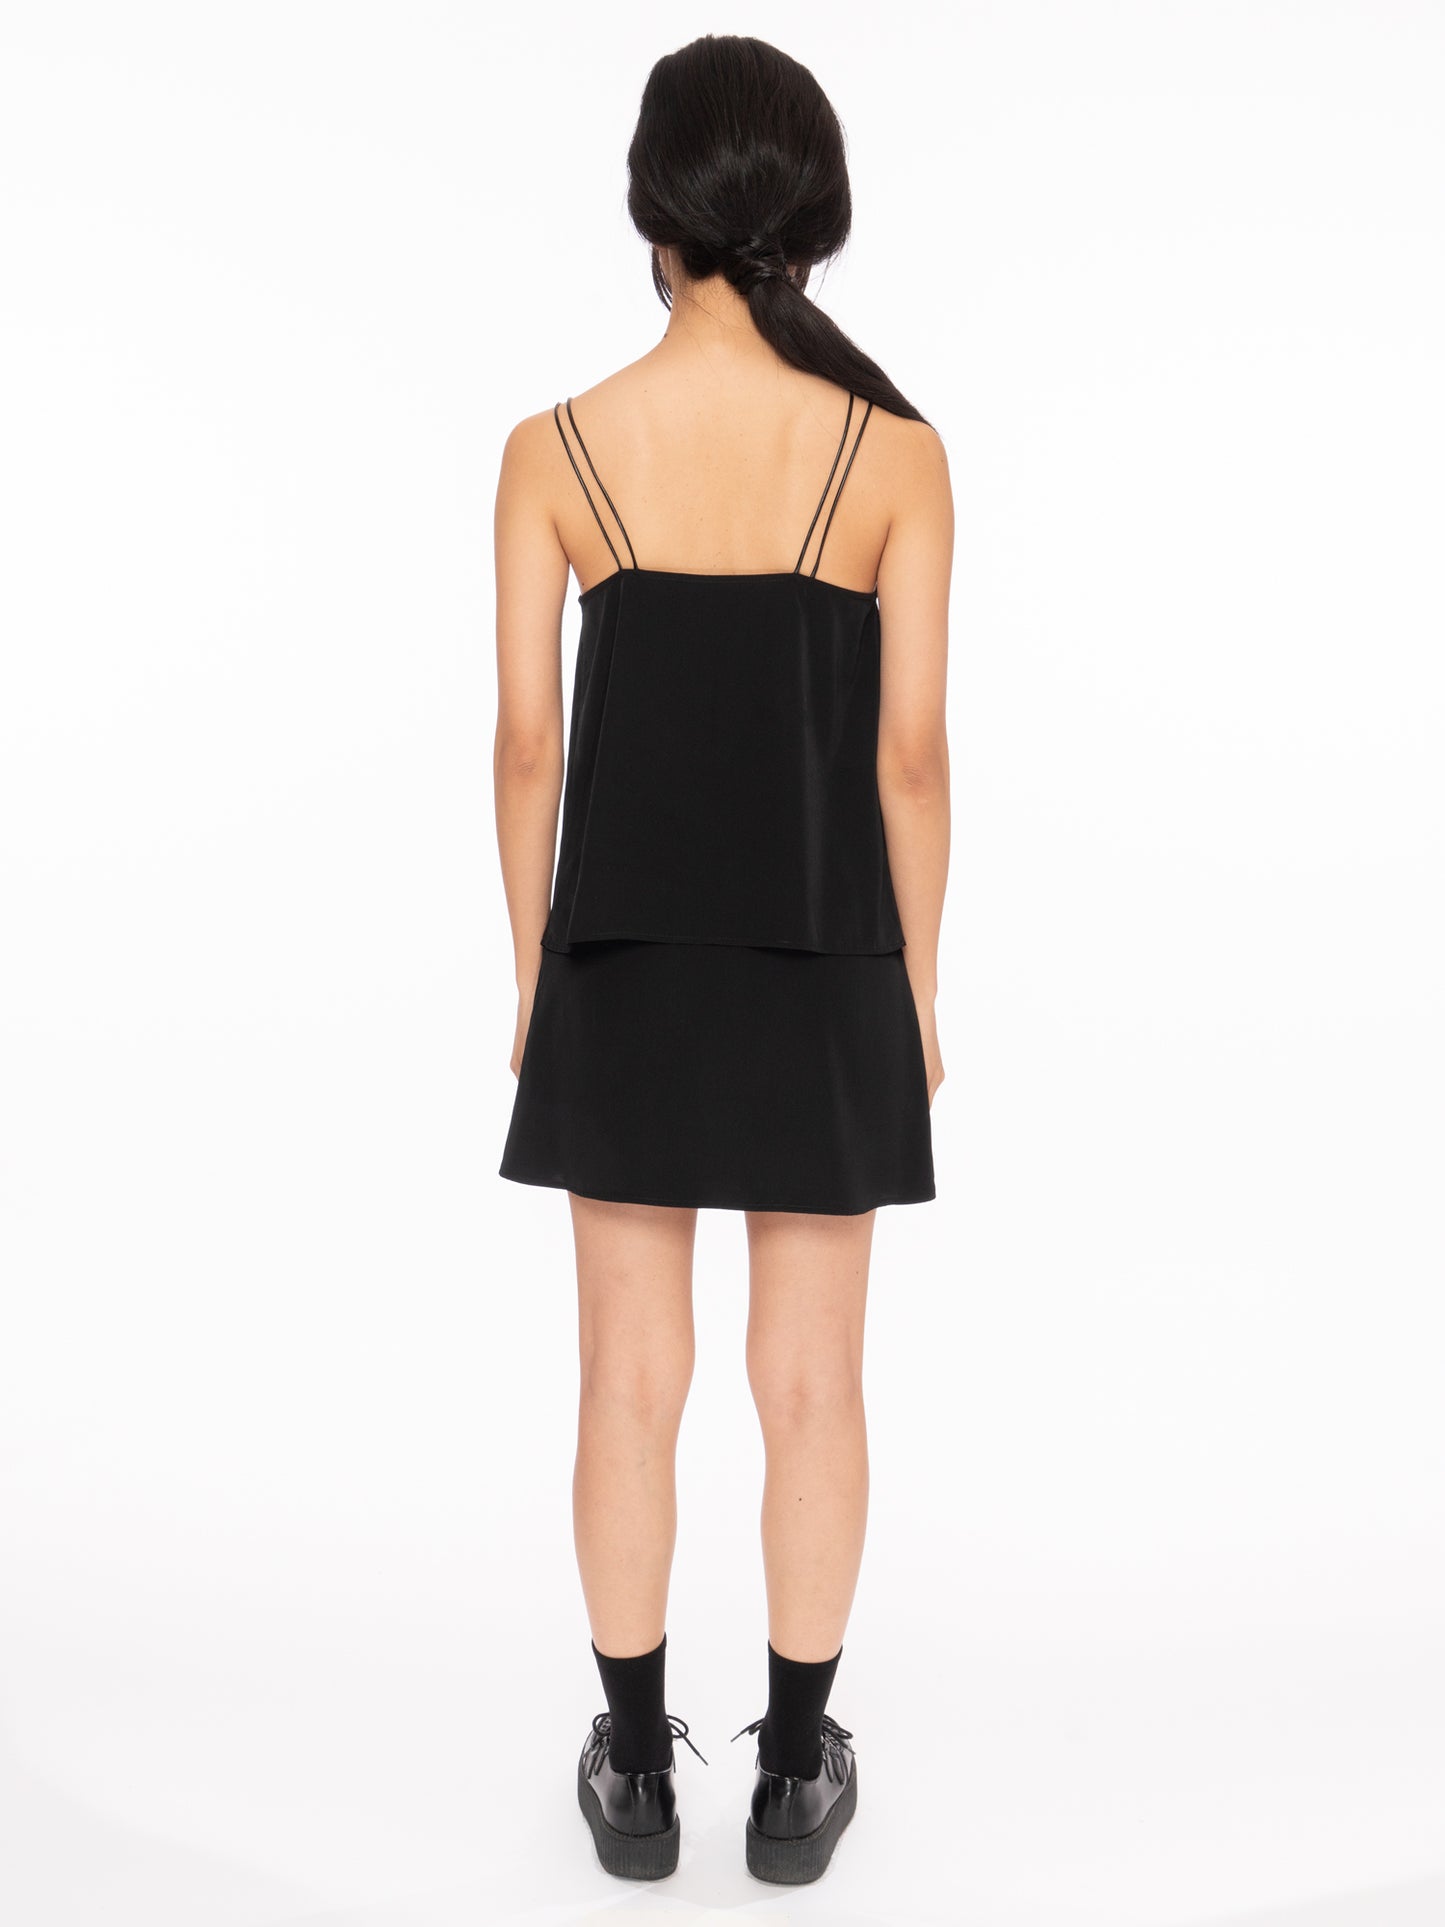 rosin studios black silky satin aline zipper mini skirt